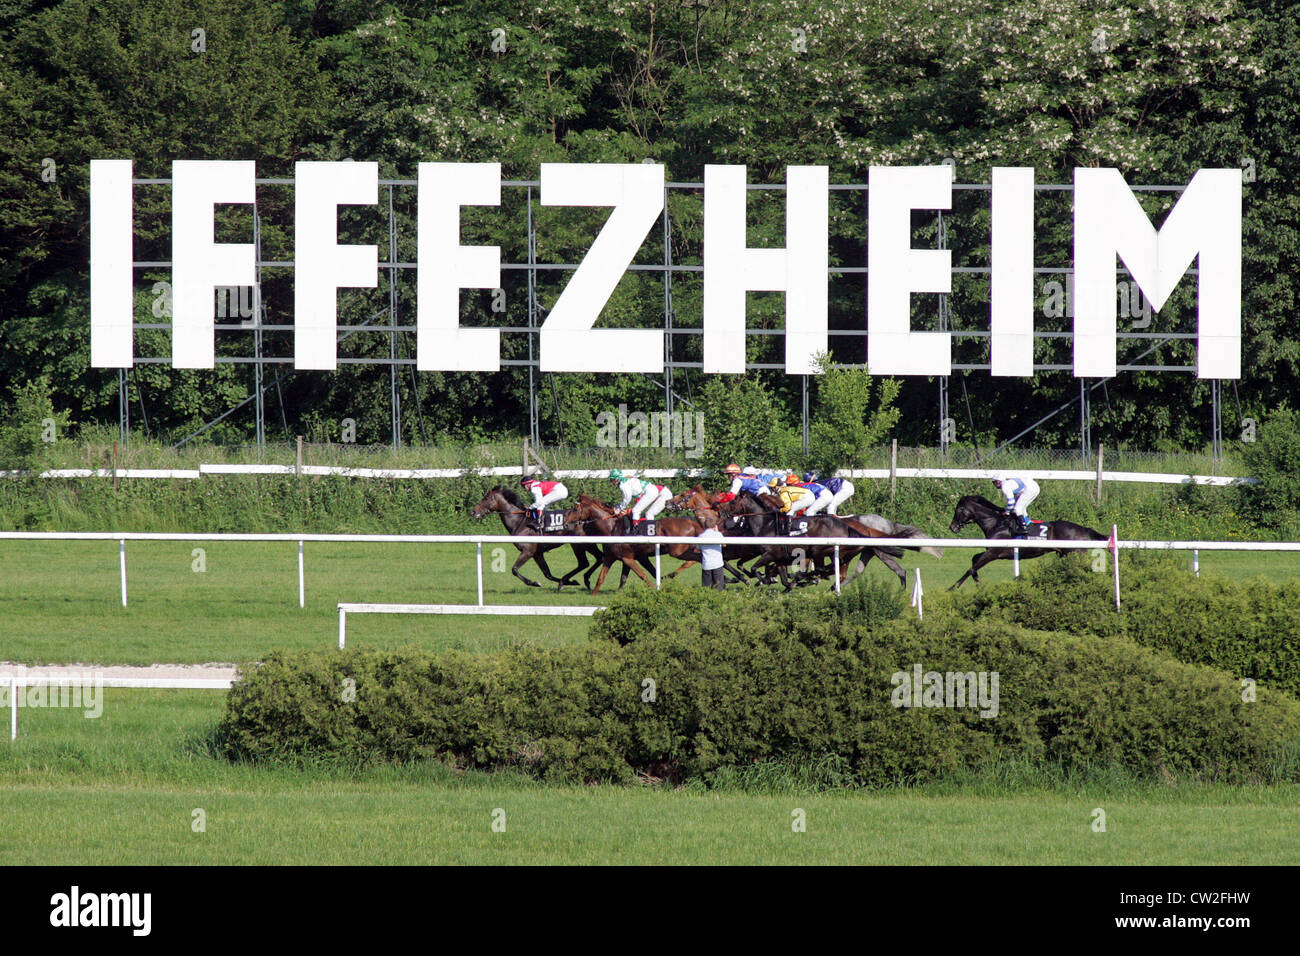 Iffezheim, the logo of the racecourse Baden-Baden Stock Photo